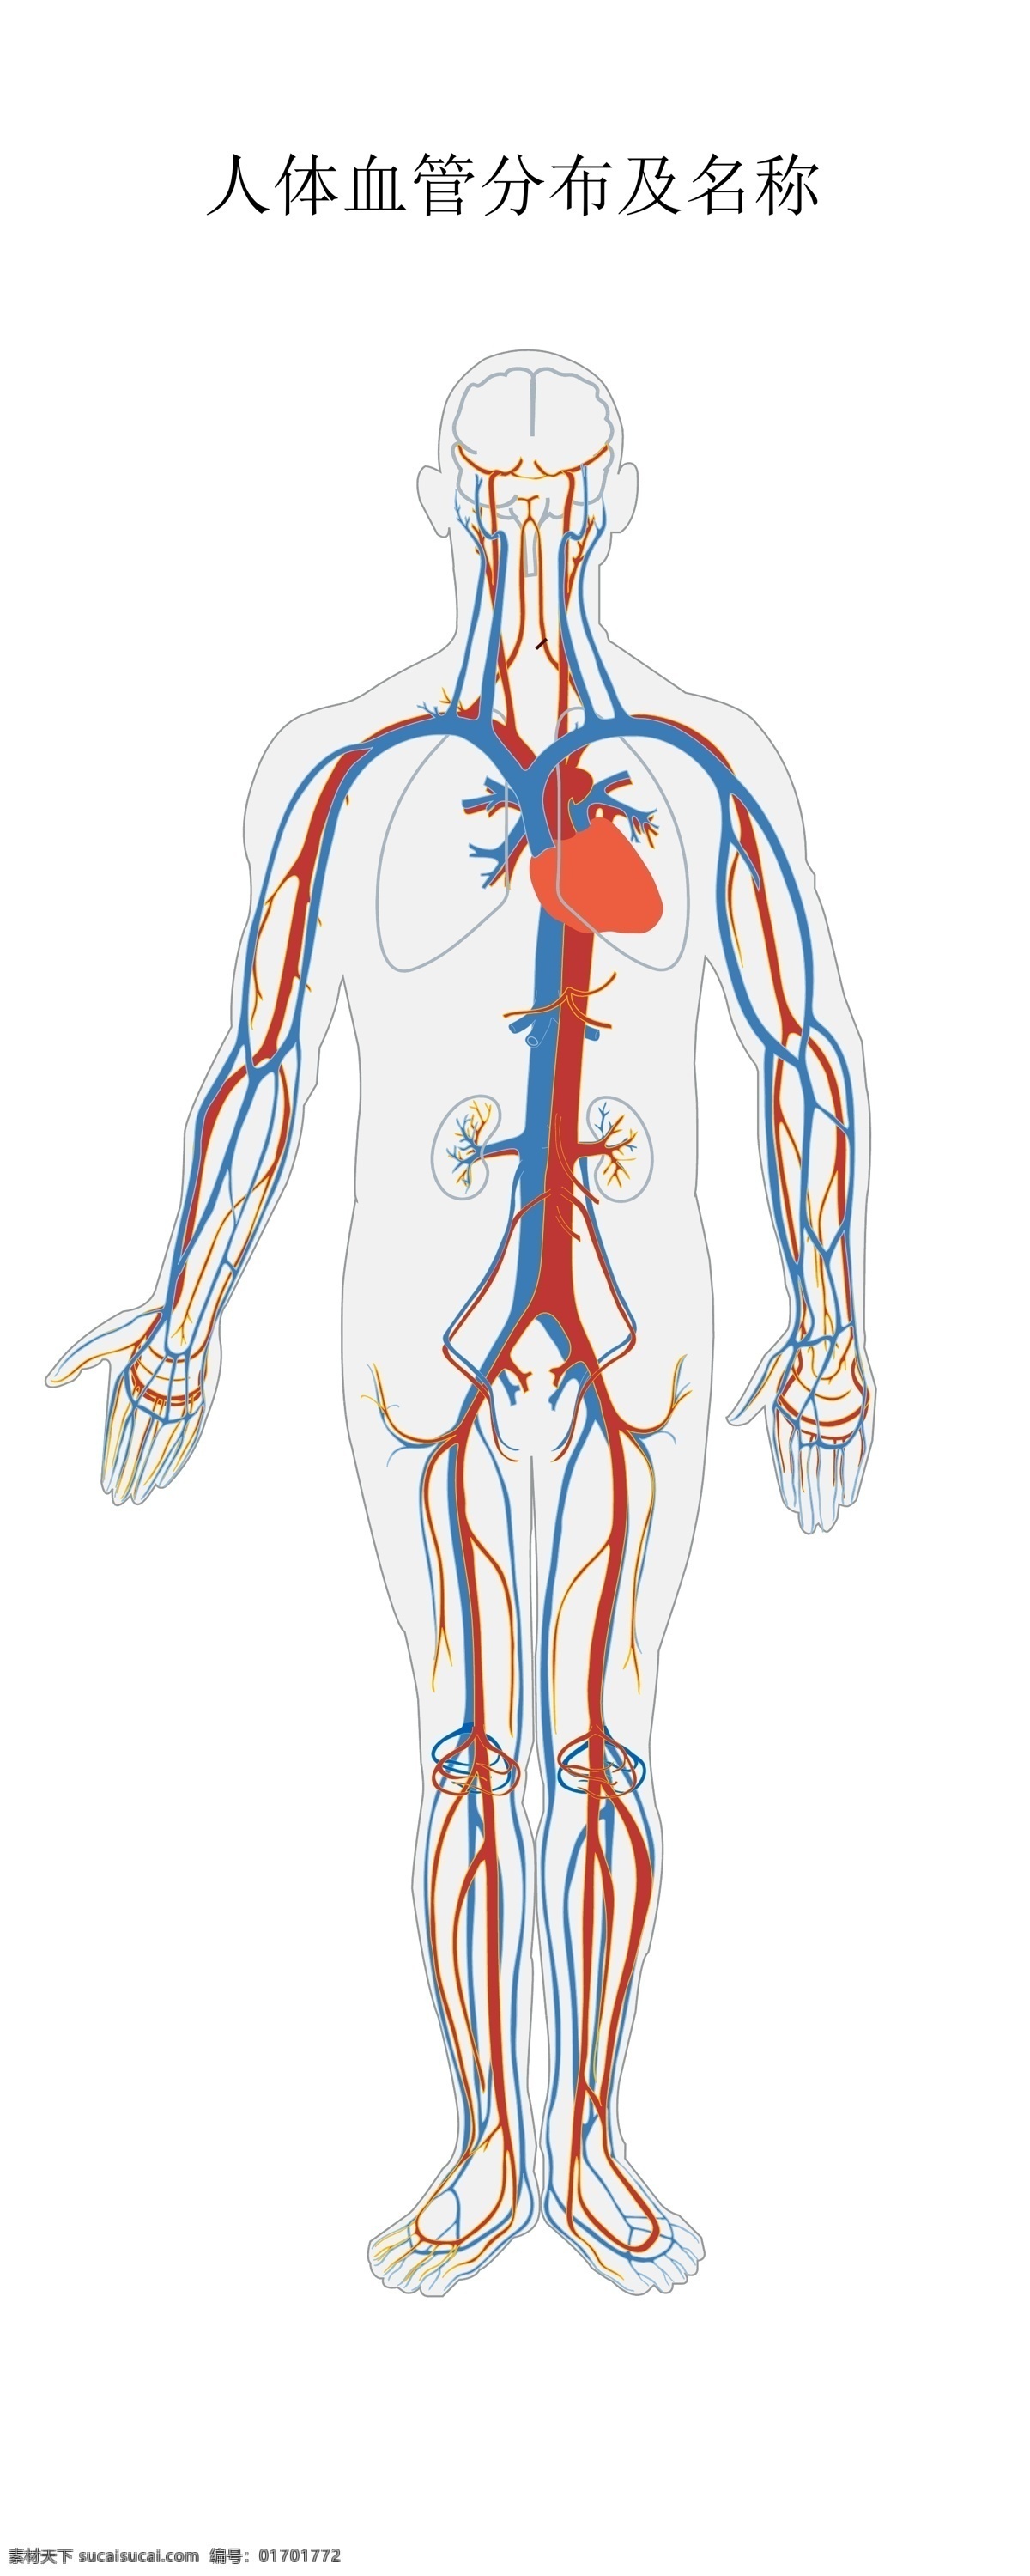 人体 血管 分布 结构图 血管分布结构 人体血管 动脉静脉 血管结构 医疗素材 医疗护理